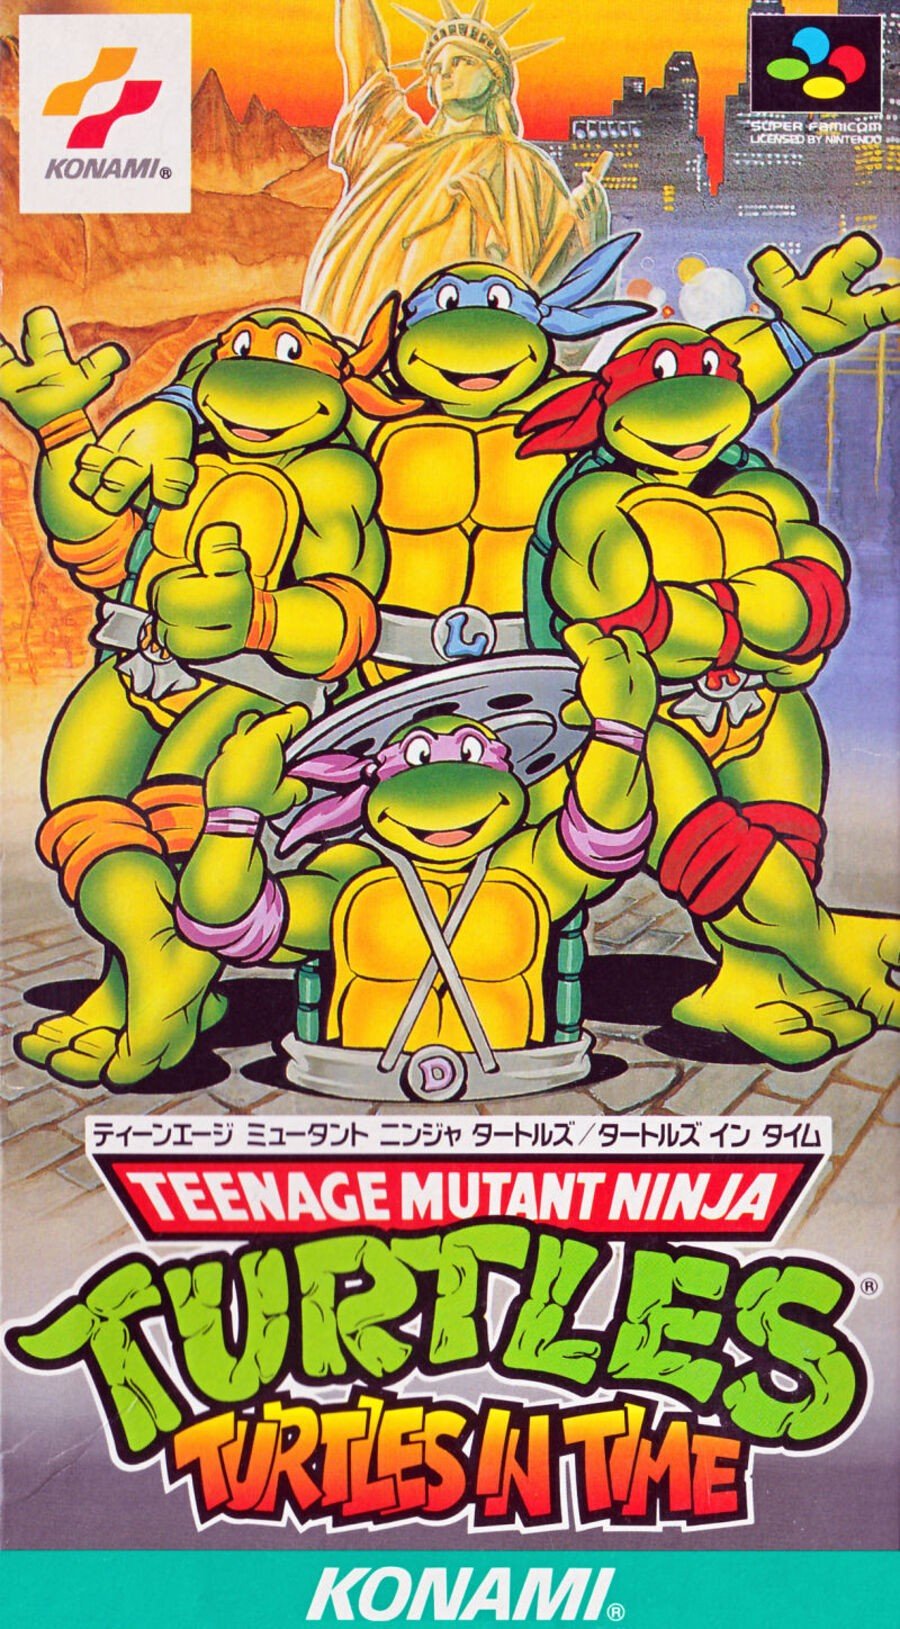 TMNT Turtles in Time Japan